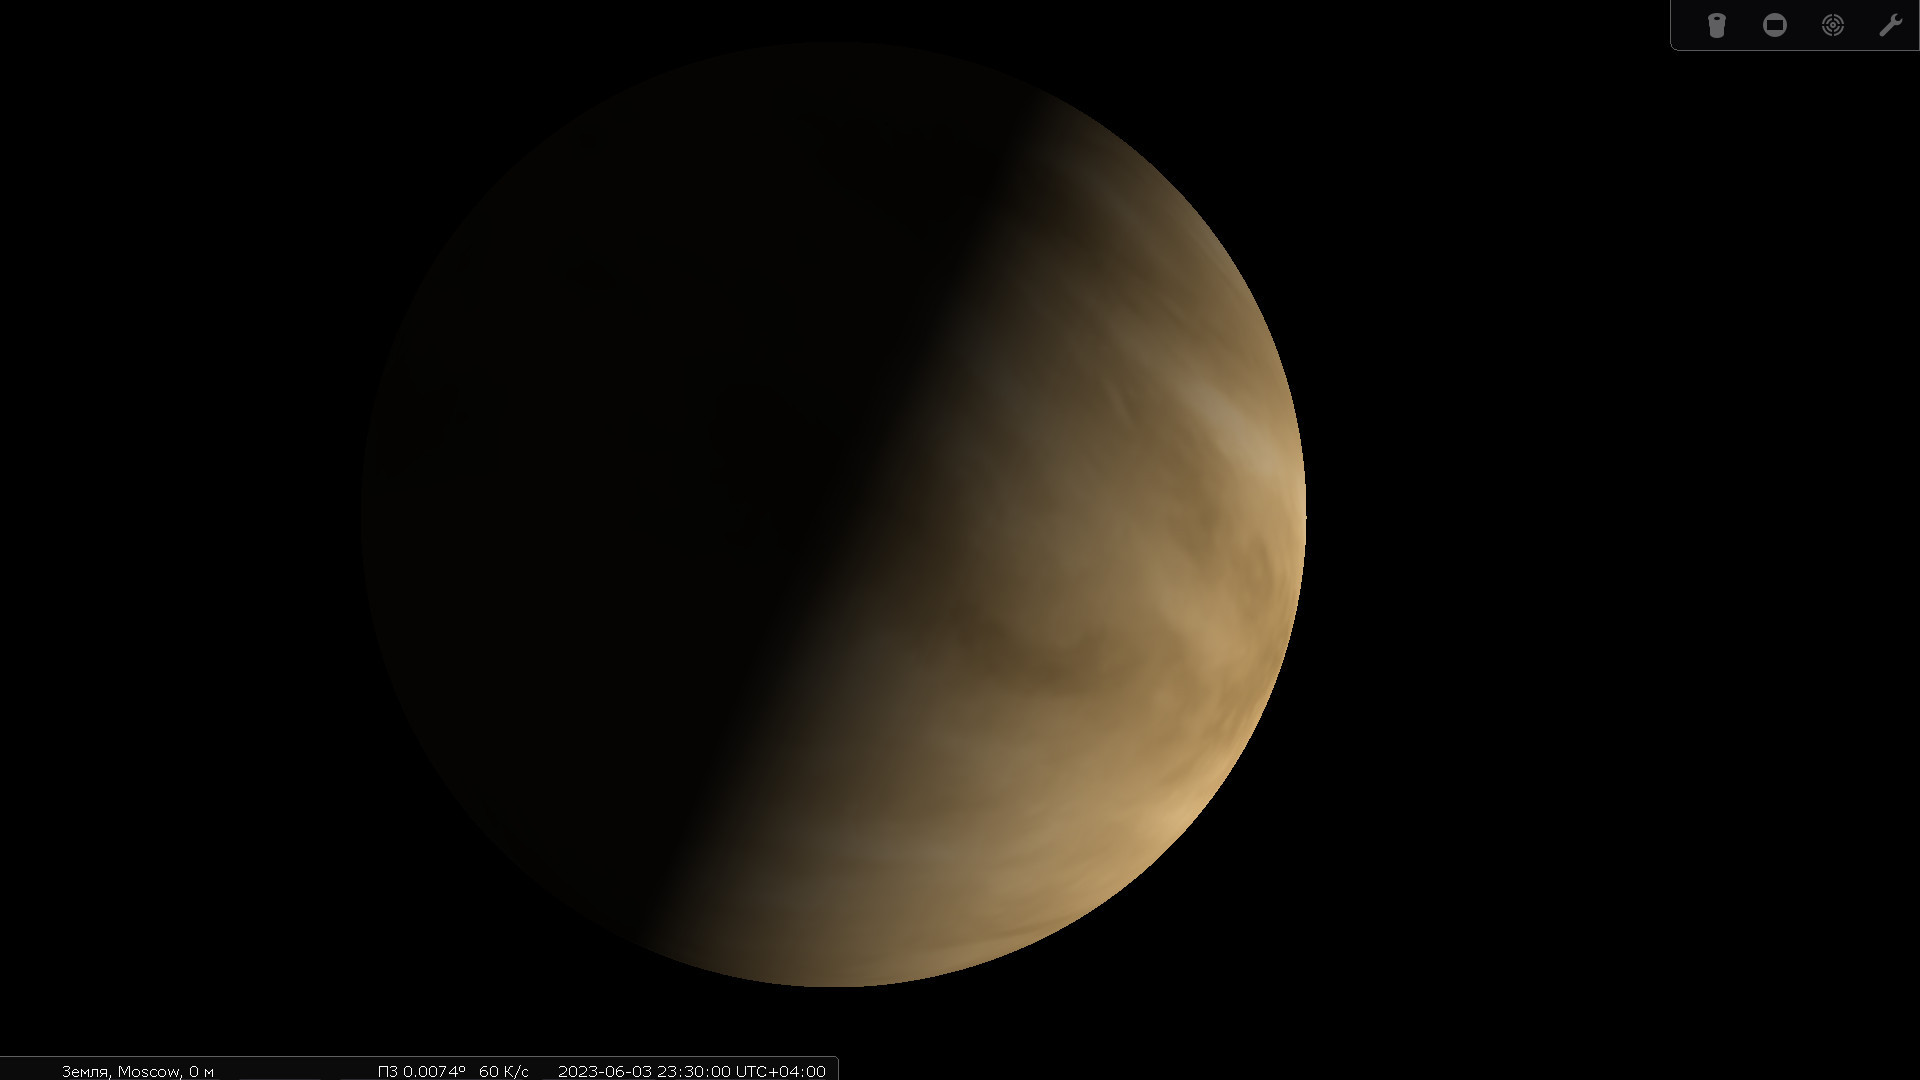 Моделирование видимости Венеры в&nbsp;дни элонгации в&nbsp;телескоп при&nbsp;большом увеличении, с&nbsp;той оговоркой, что такой контрастности деталей облачного покрова планеты без&nbsp;специальных фильтров не&nbsp;увидеть.